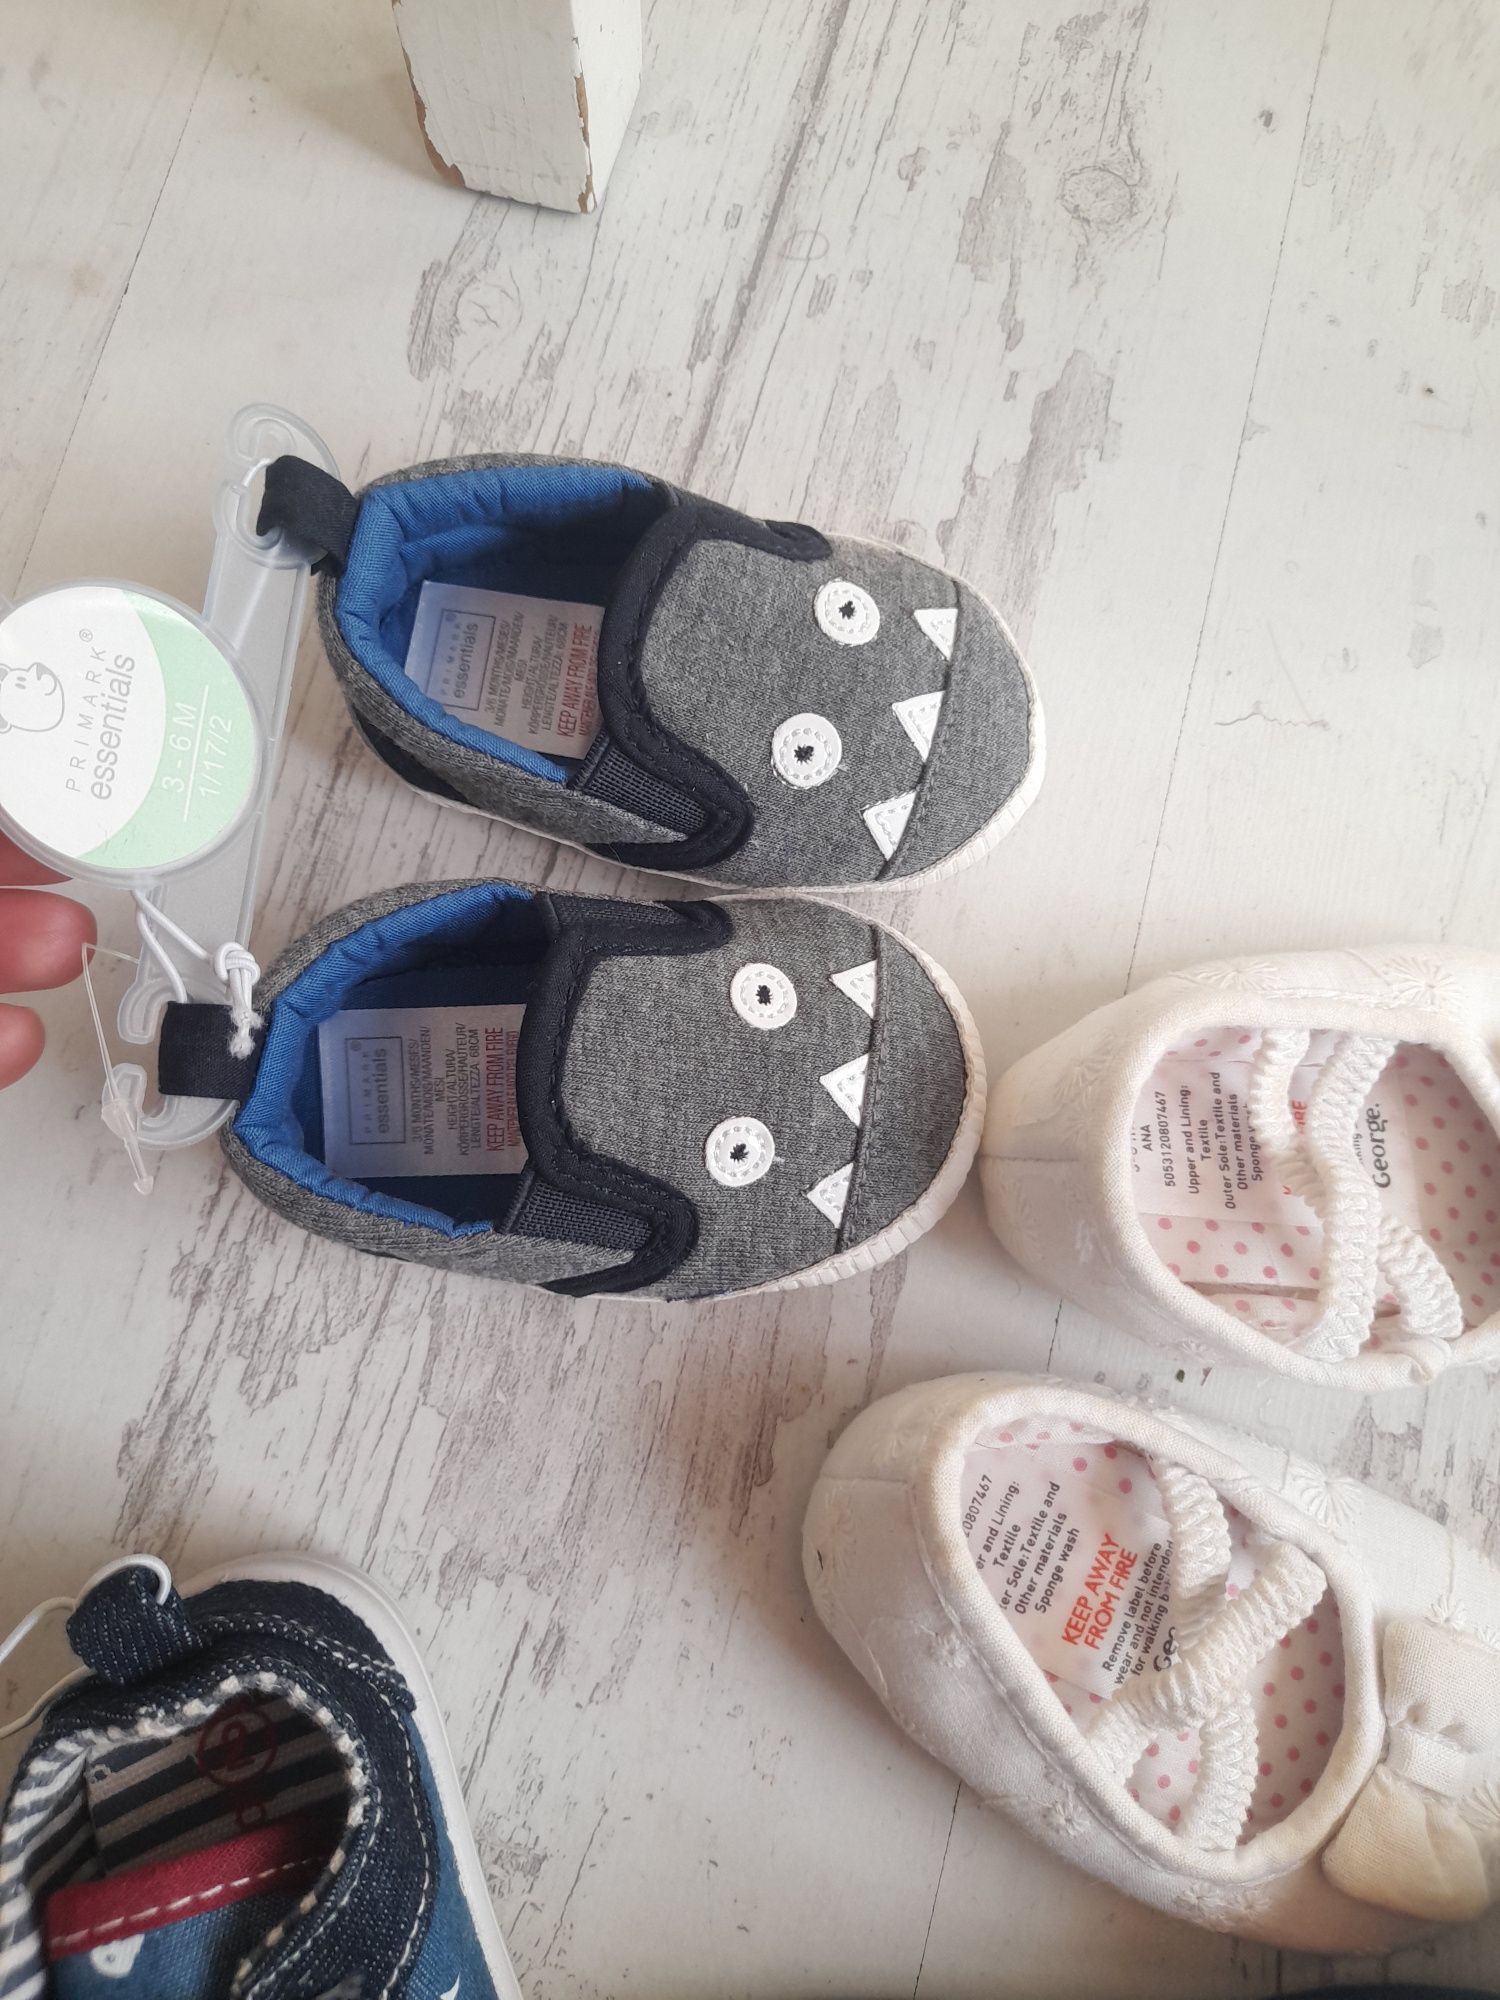 Бебешки обувки номера от 16 до 23